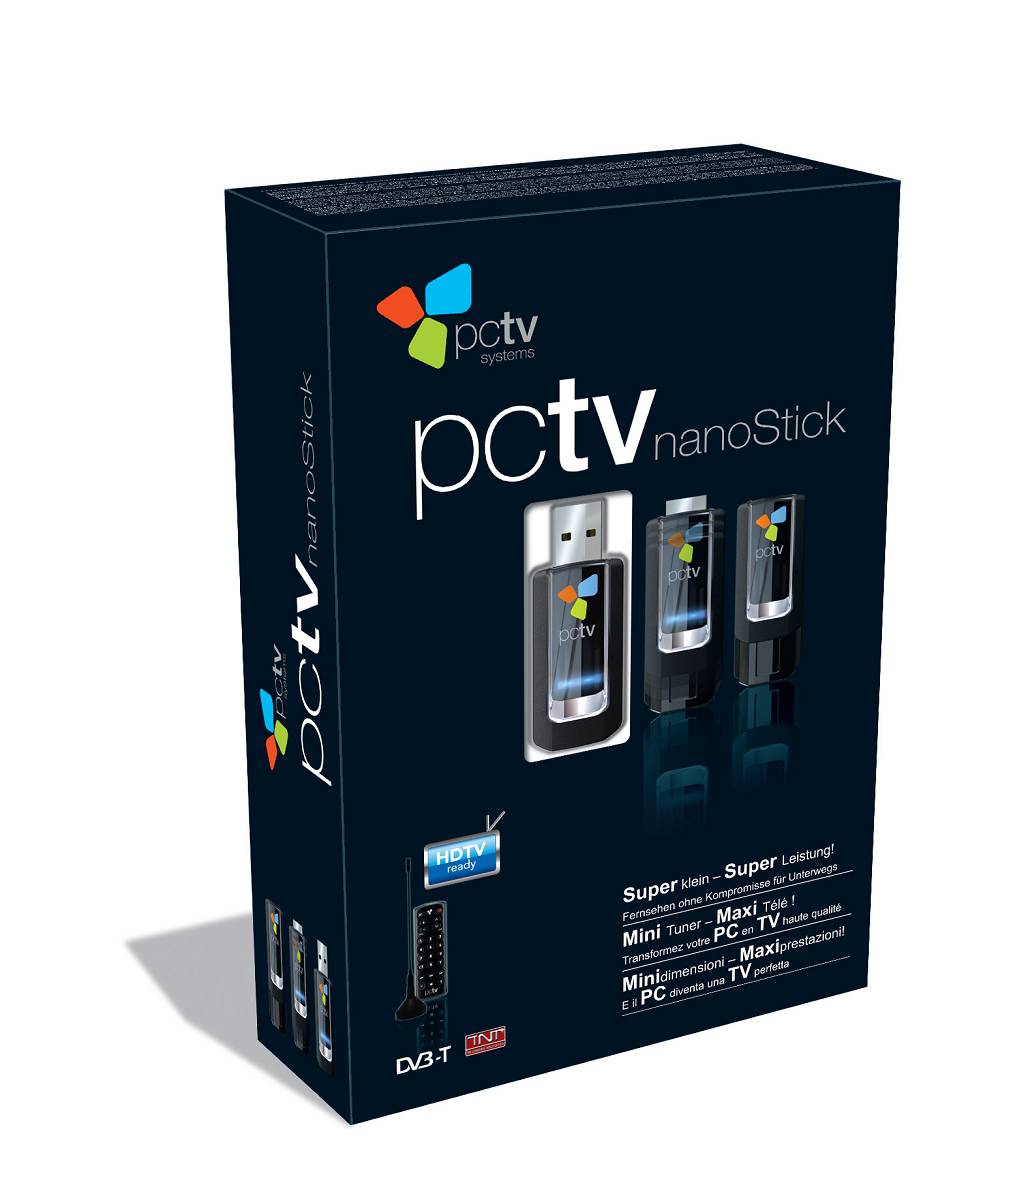 PCTV > Produits > Produits > Tuner TV pour Mac > PCTV microStick HD Ultimate